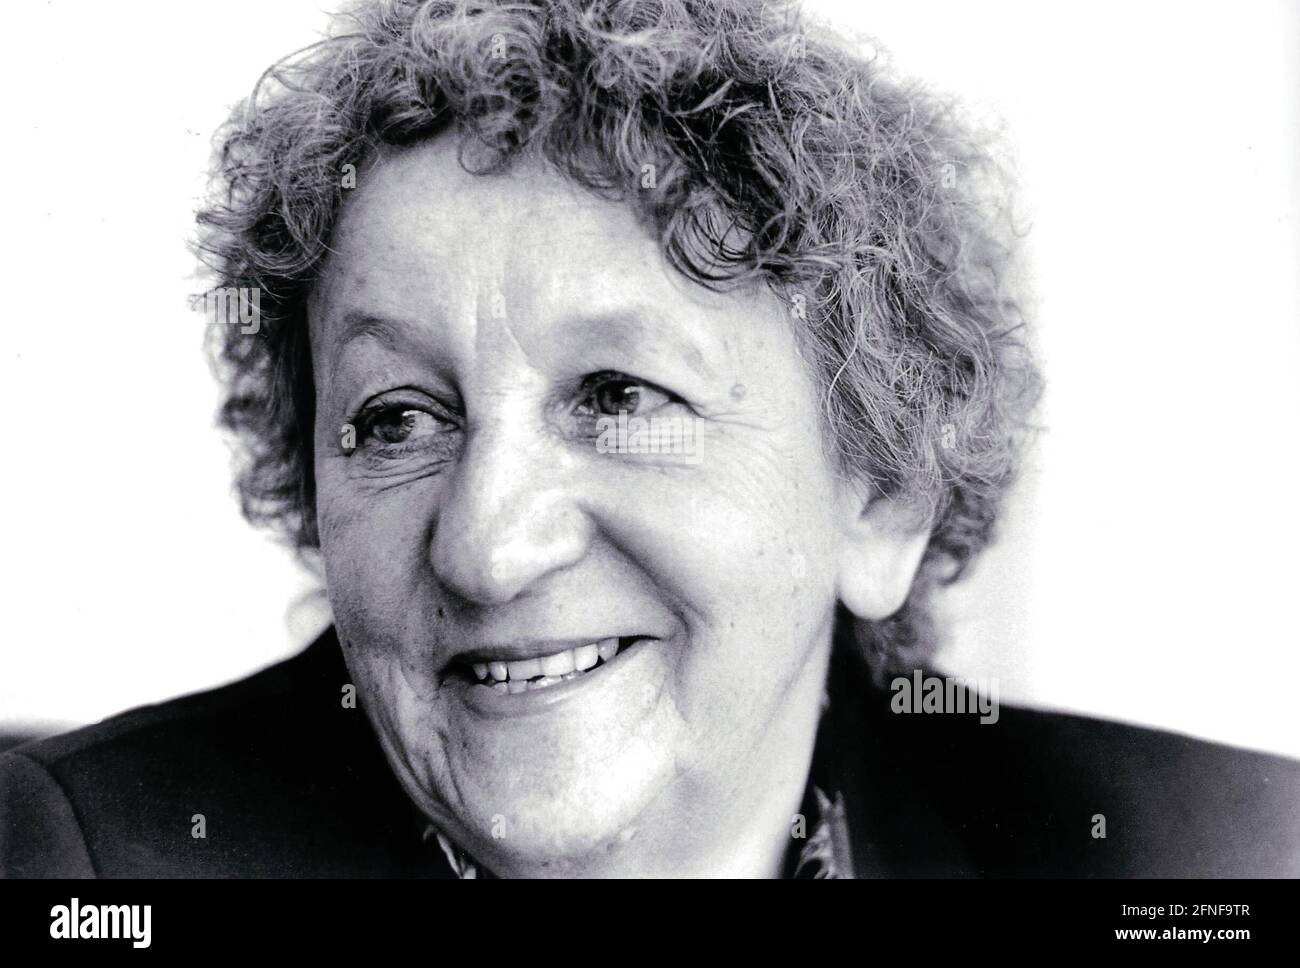 Ingrid Noll (geboren 1935), deutsche Schriftstellerin. Das Foto wurde vor einer Lesung im Harenberg City Center, Dortmund, aufgenommen. [Automatisierte Übersetzung] Stockfoto